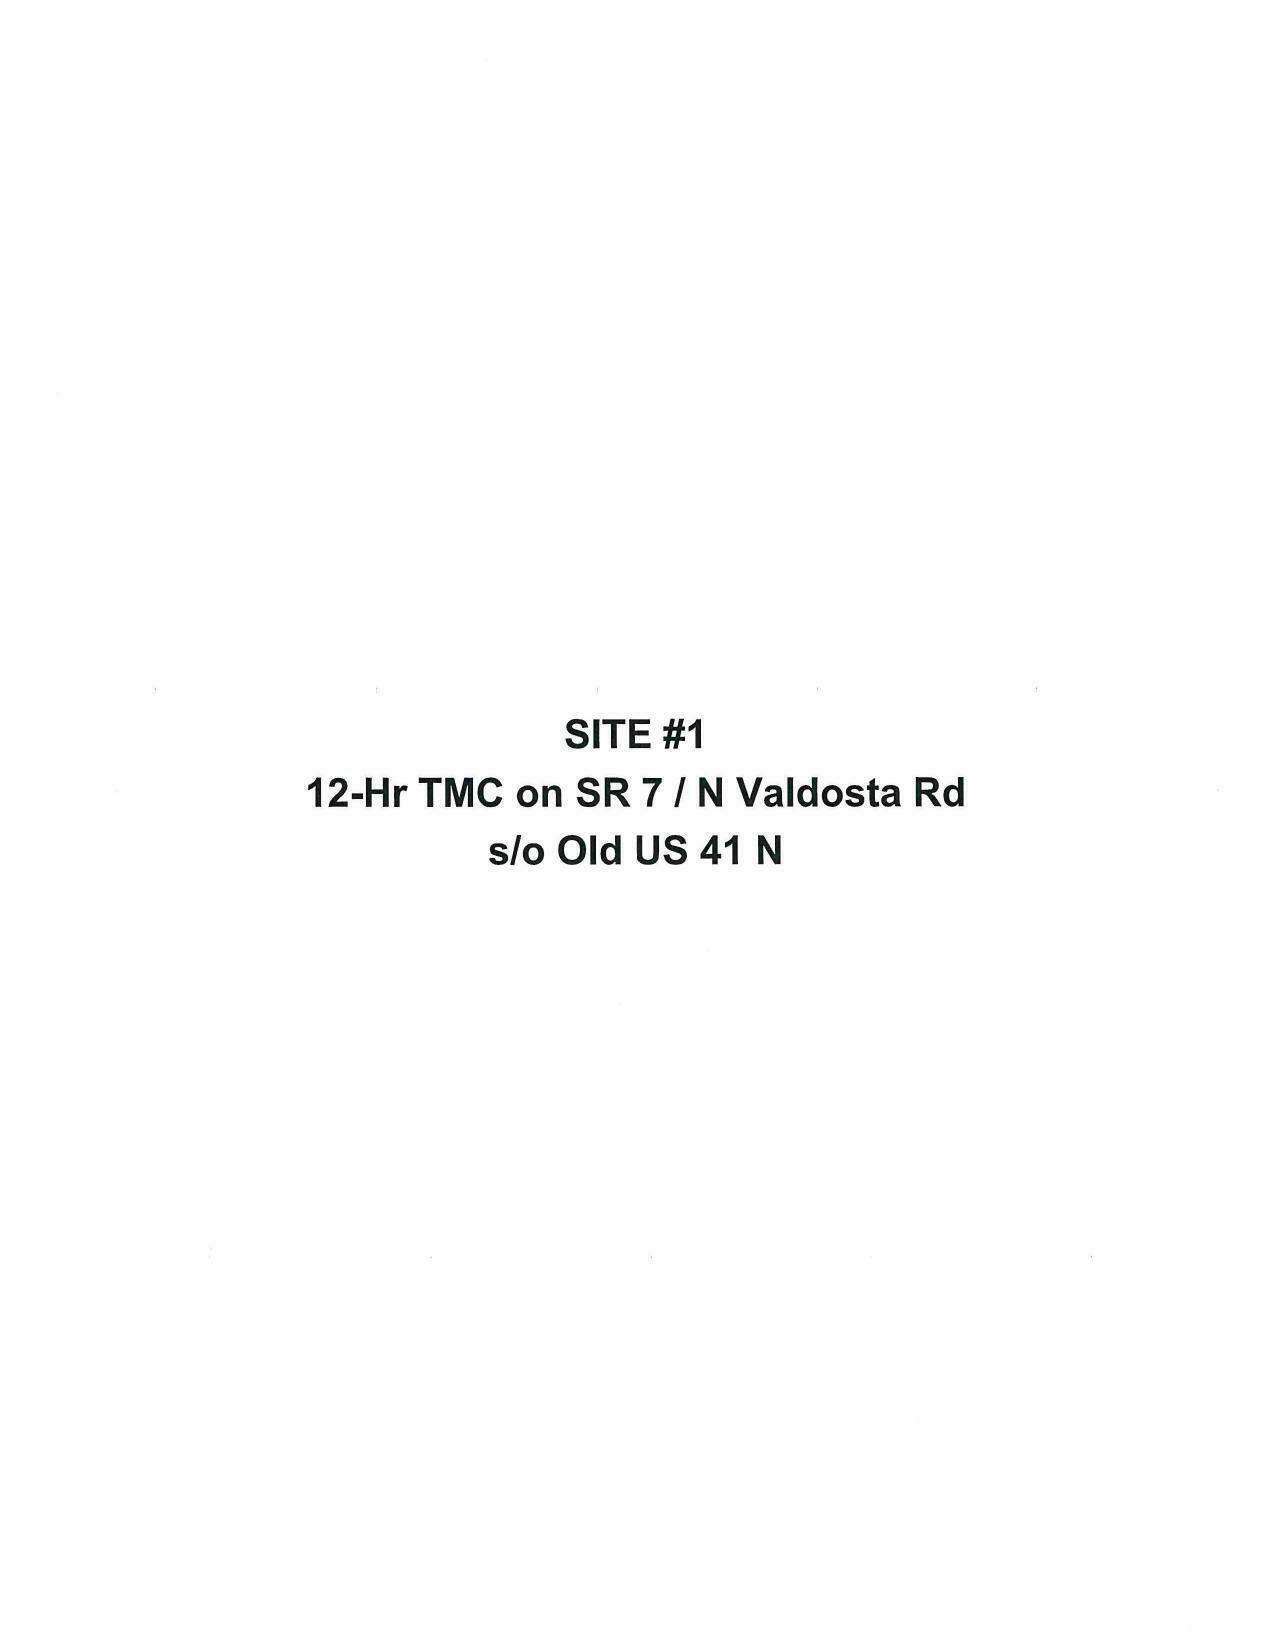 Site #1: 12-Hr TMC on N Valdosta Road s/o Old US 41 N